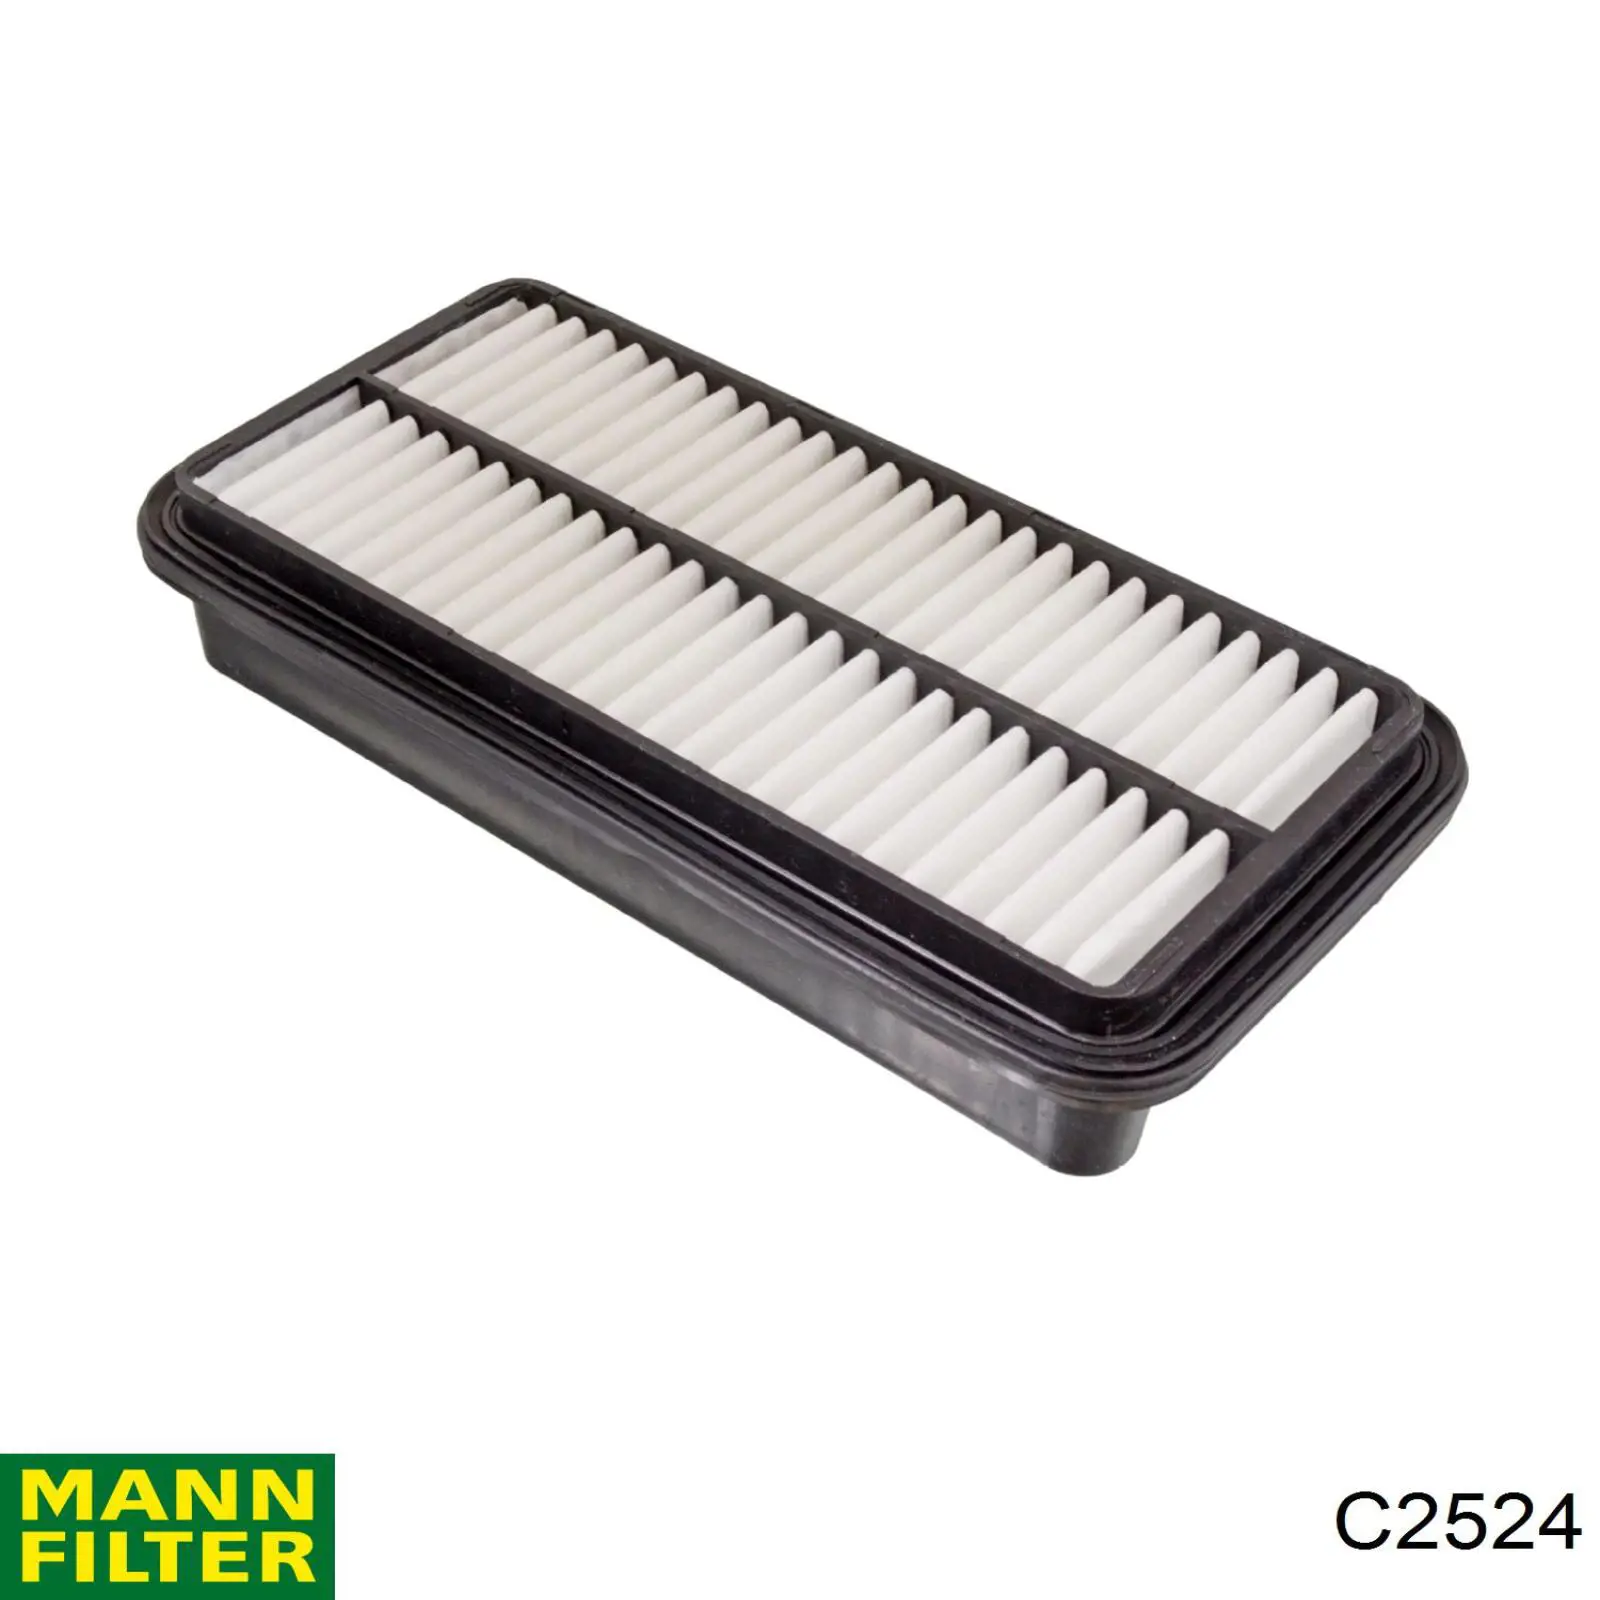 Filtro de aire C2524 Mann-Filter